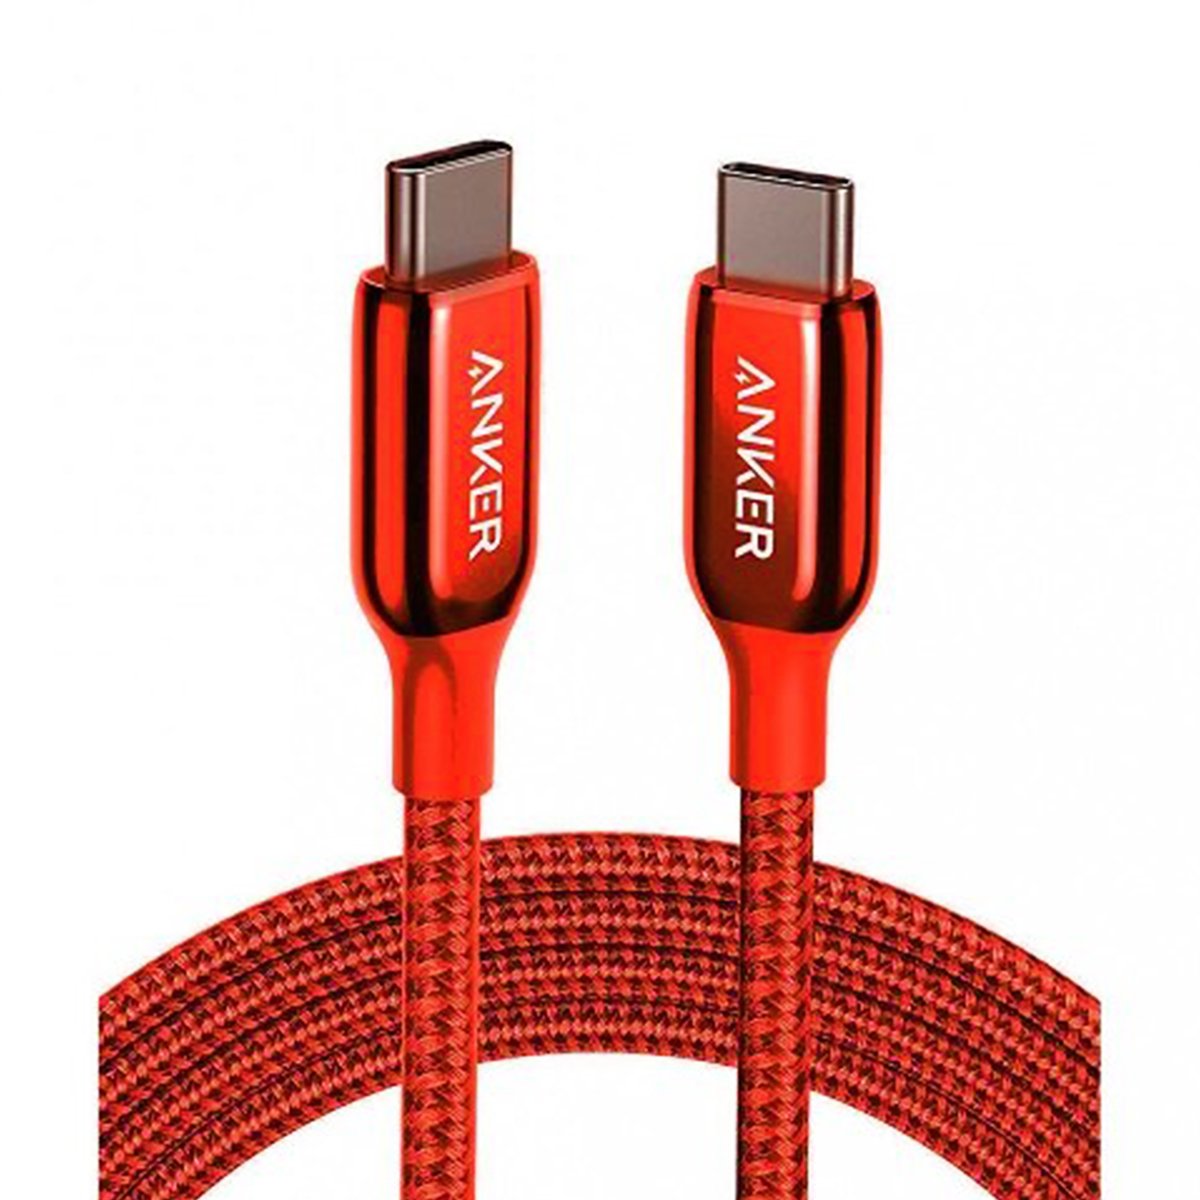 أنكر باور لاين + III كابل USB-C إلى USB-C A8862H91 0.9  متر أحمر